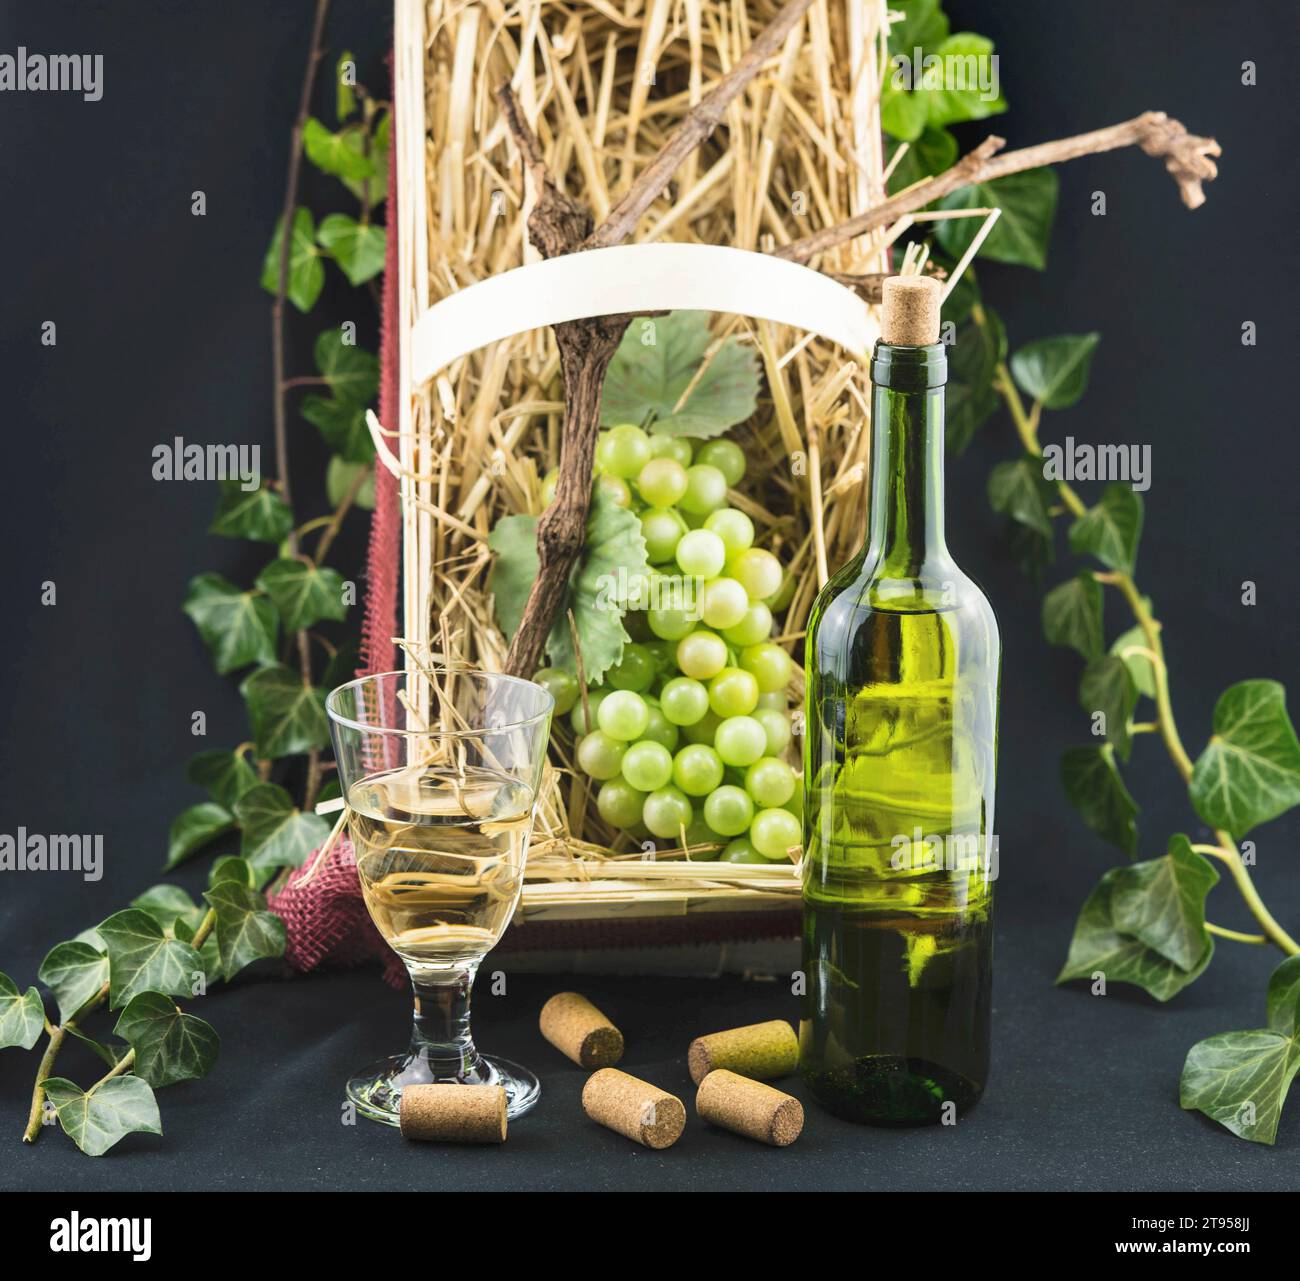 Vigne, vigne (Vitis vinifera), bouteille et verre de vin blanc, raisins dans une boîte de paille, entouré de lierre Banque D'Images